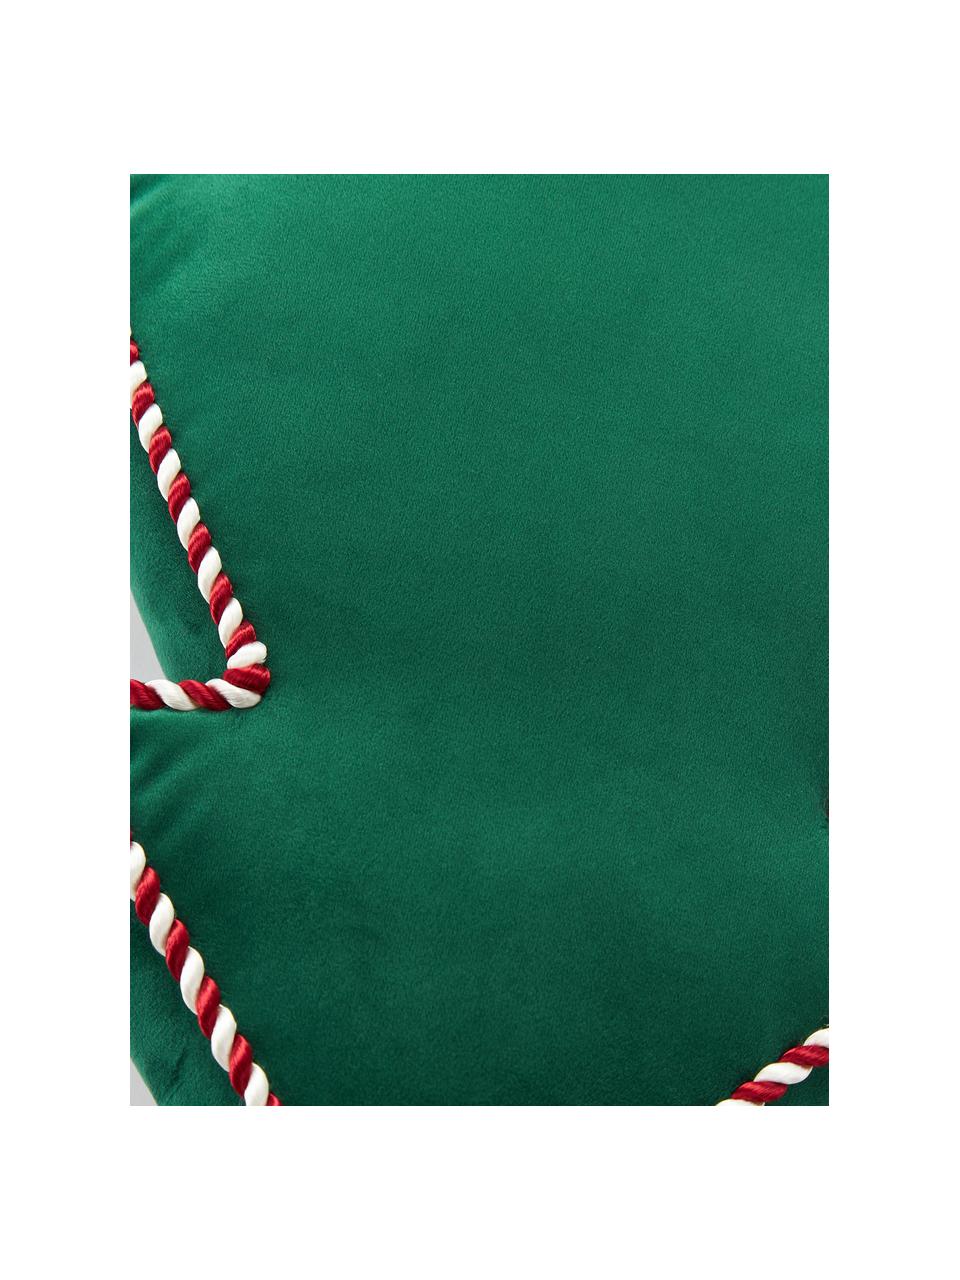 Cuscino arredo natalizio in velluto Ziva, Rivestimento: 100% velluto in poliester, Verde scuro, Larg. 35 x Lung. 40 cm